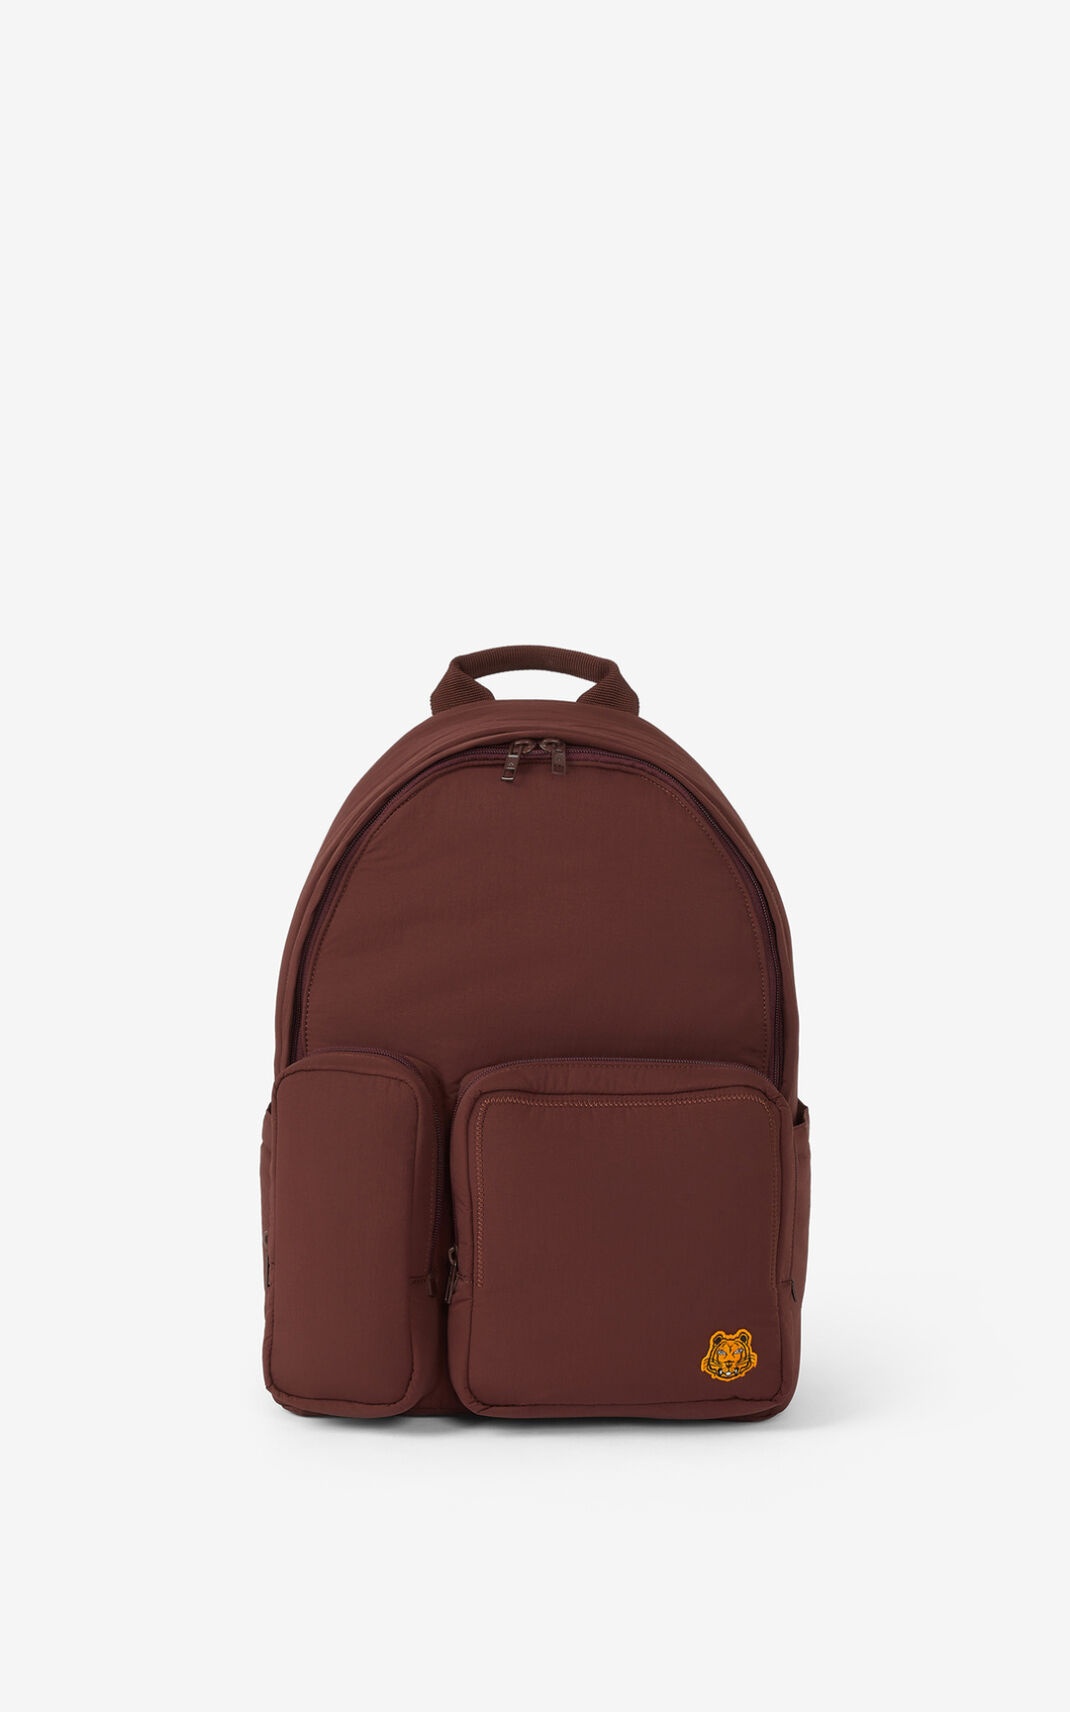 Tiger Crest backpack - 1